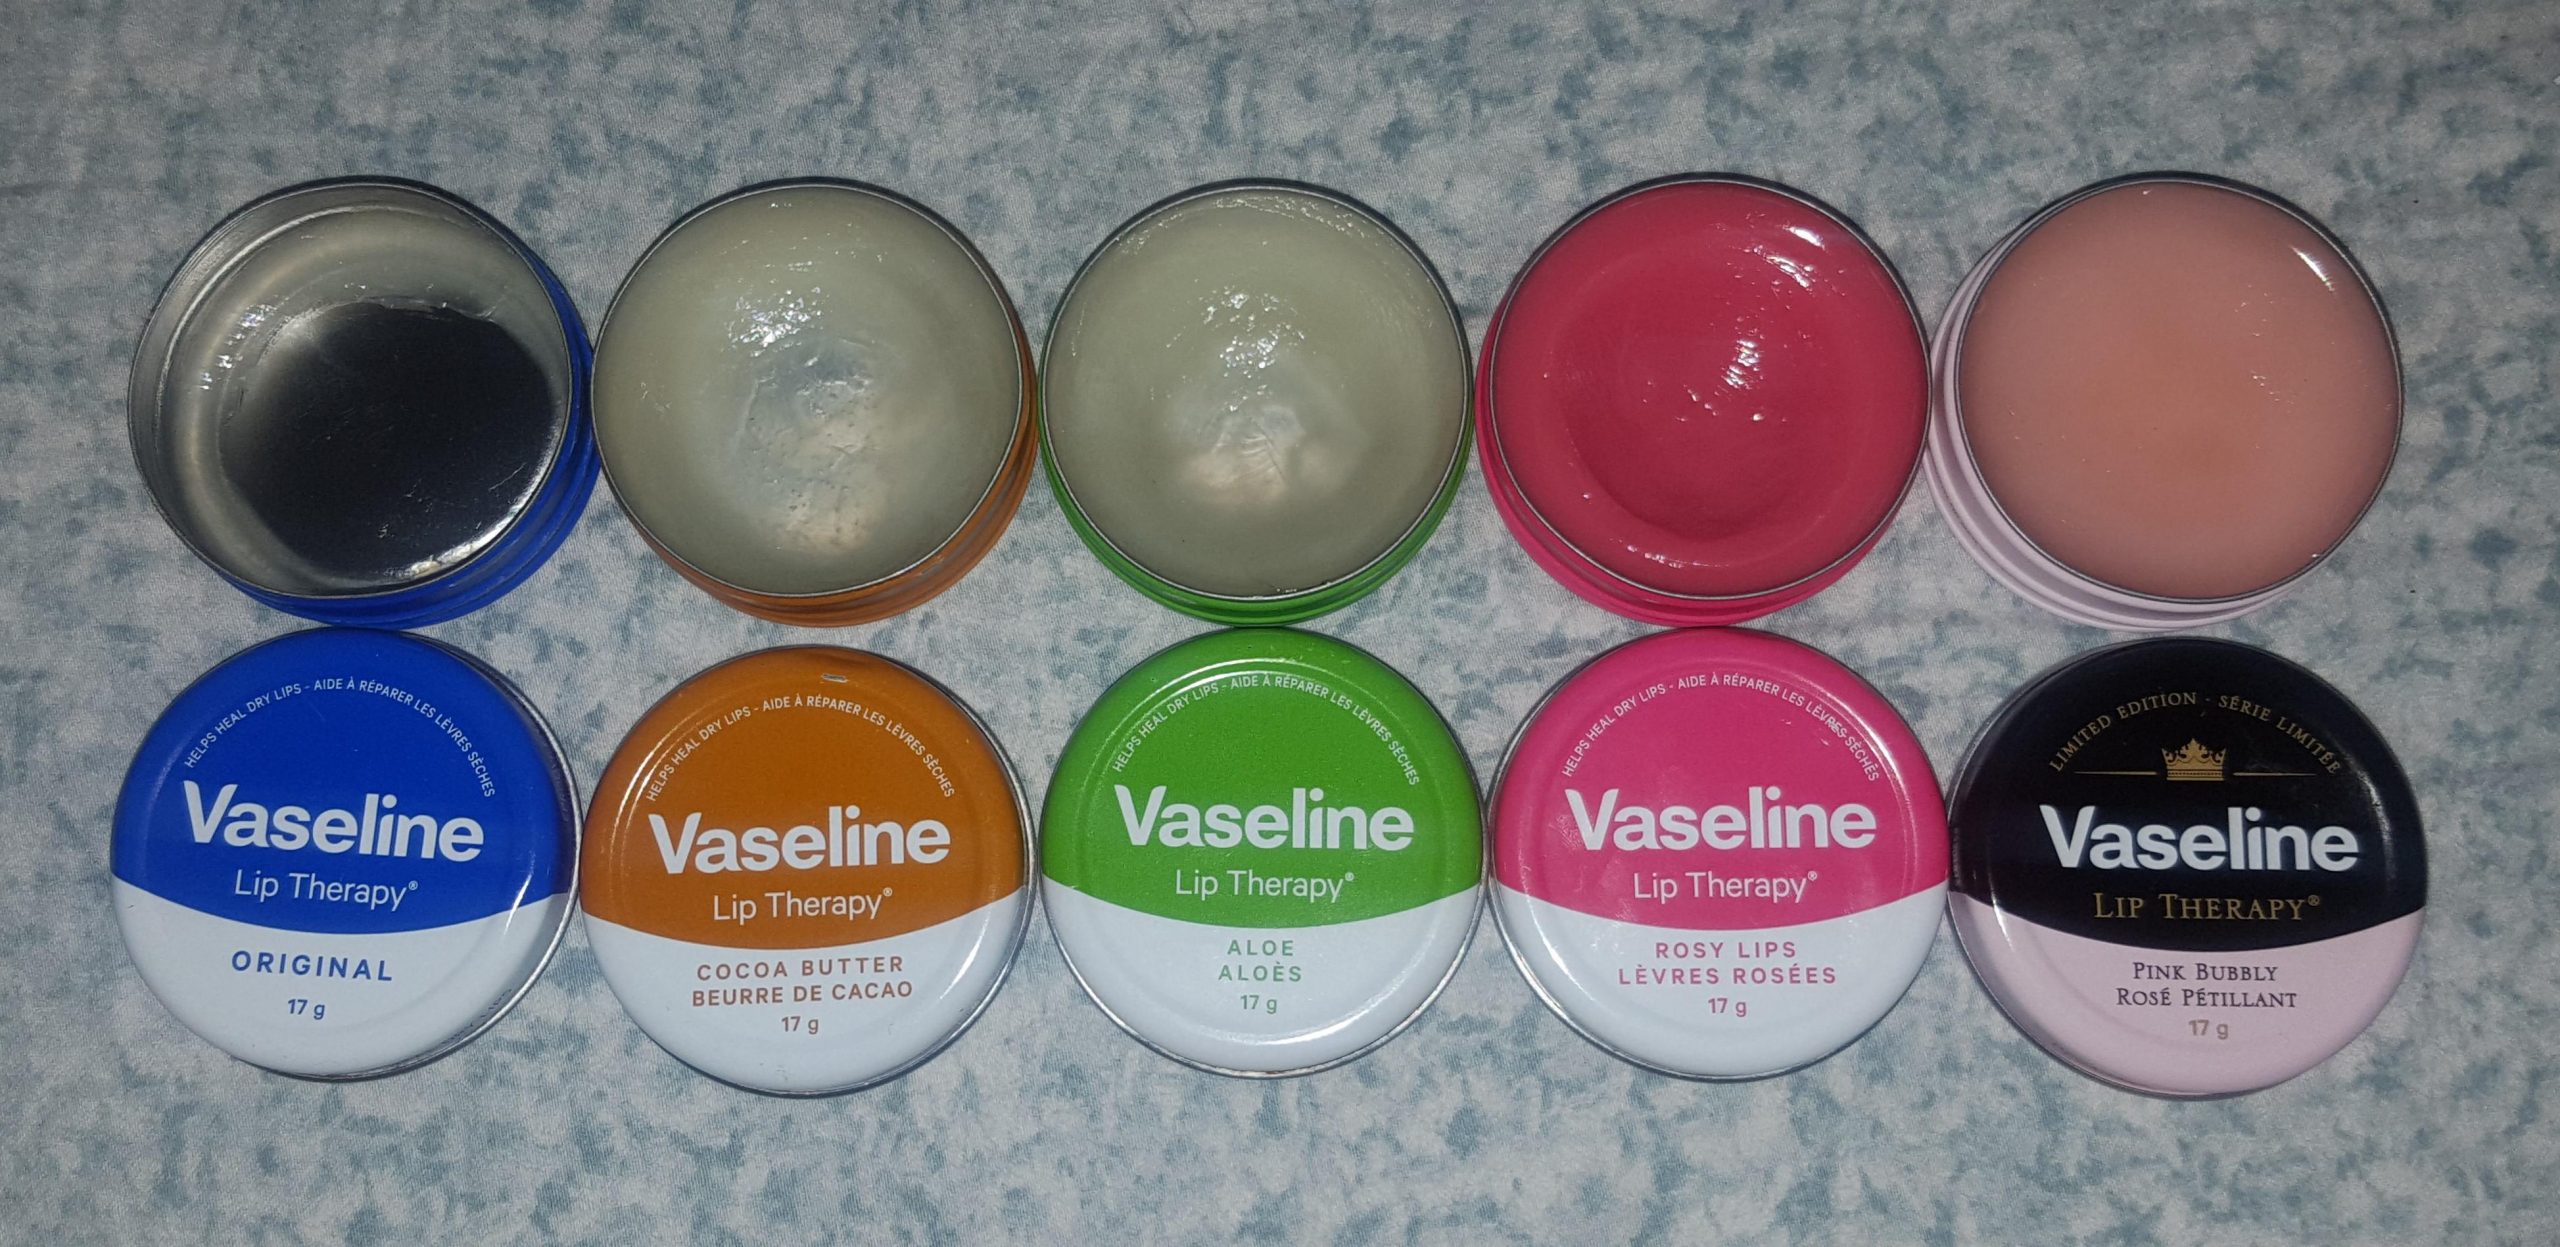 Son dưỡng môi Vaseline Lip Therapy có tốt không? Mua ở đâu?